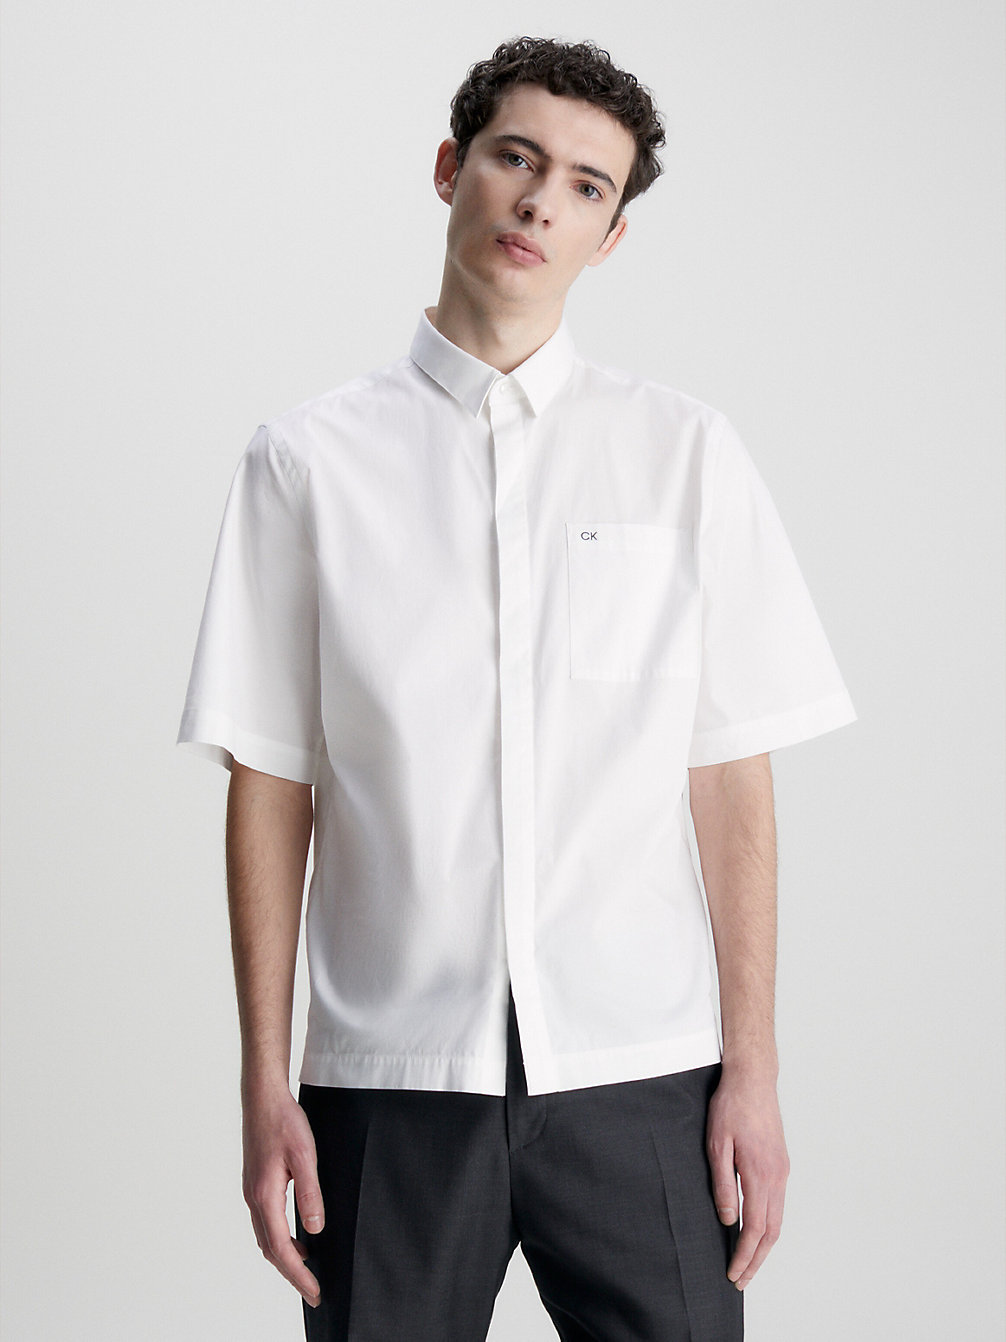 BRIGHT WHITE > Pudełkowa Koszula Z Krótkim Rękawem > undefined Mężczyźni - Calvin Klein